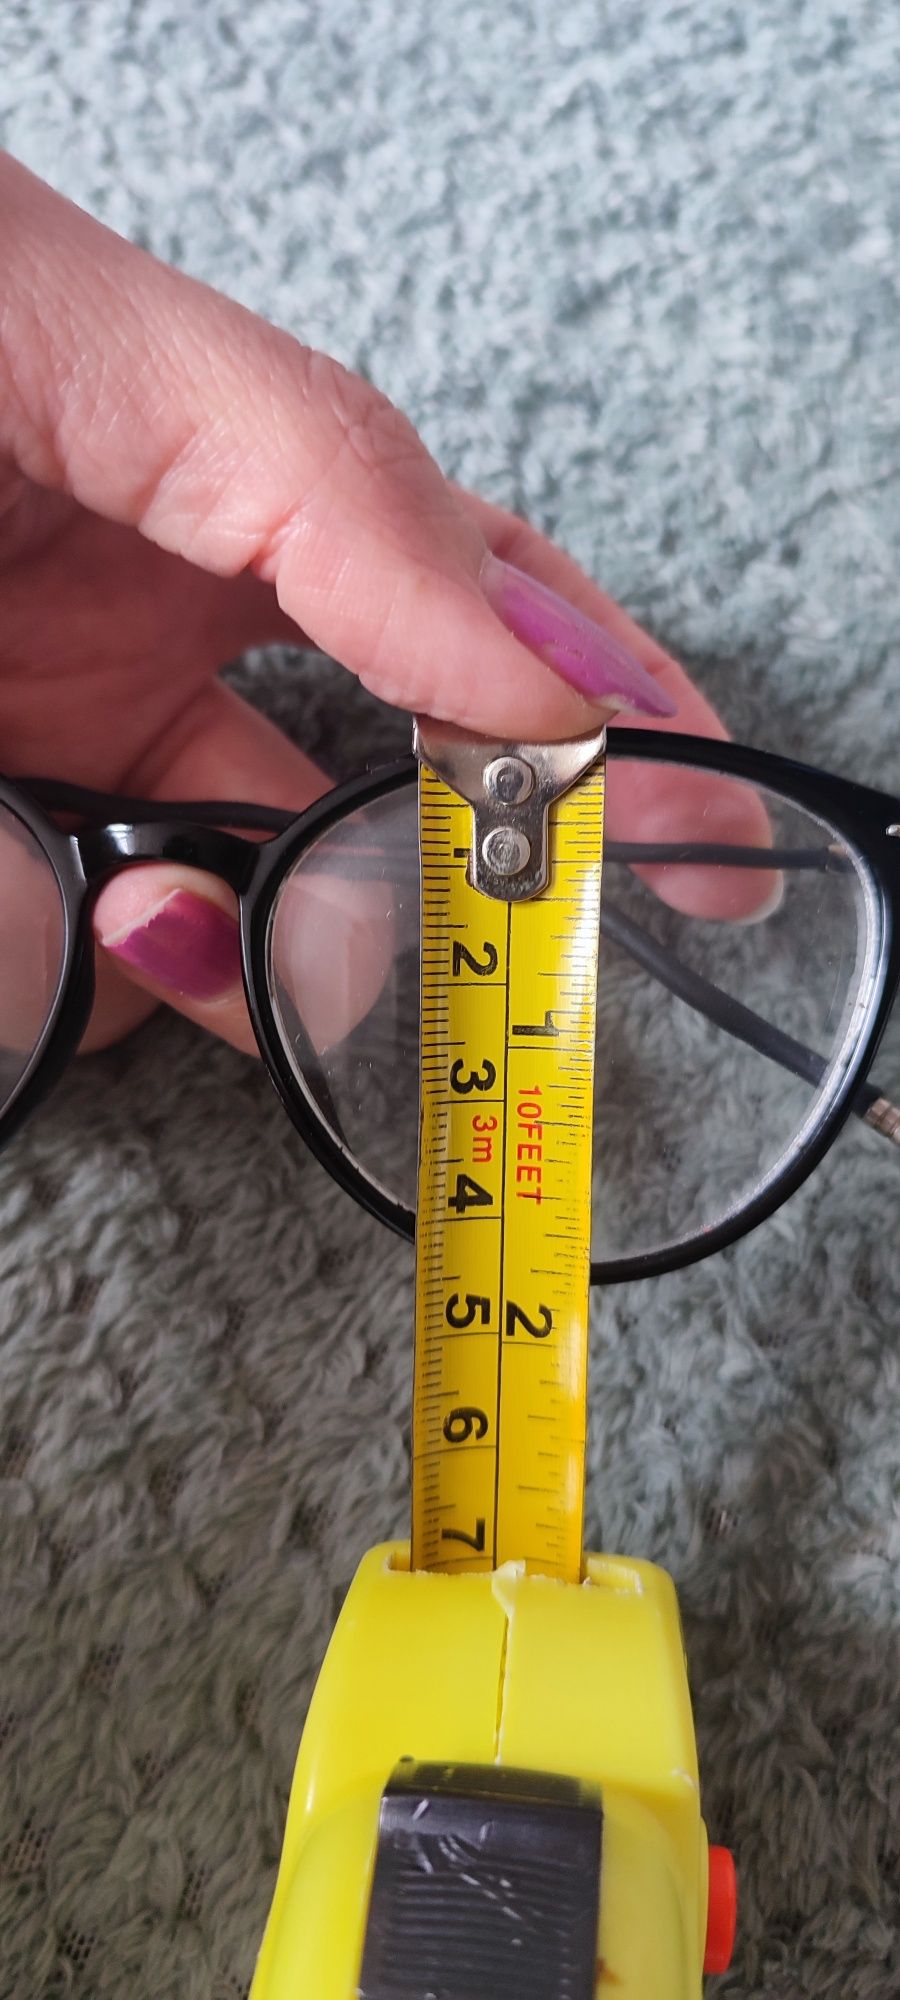 okulary korekcyjne -1,25 kocie oczy